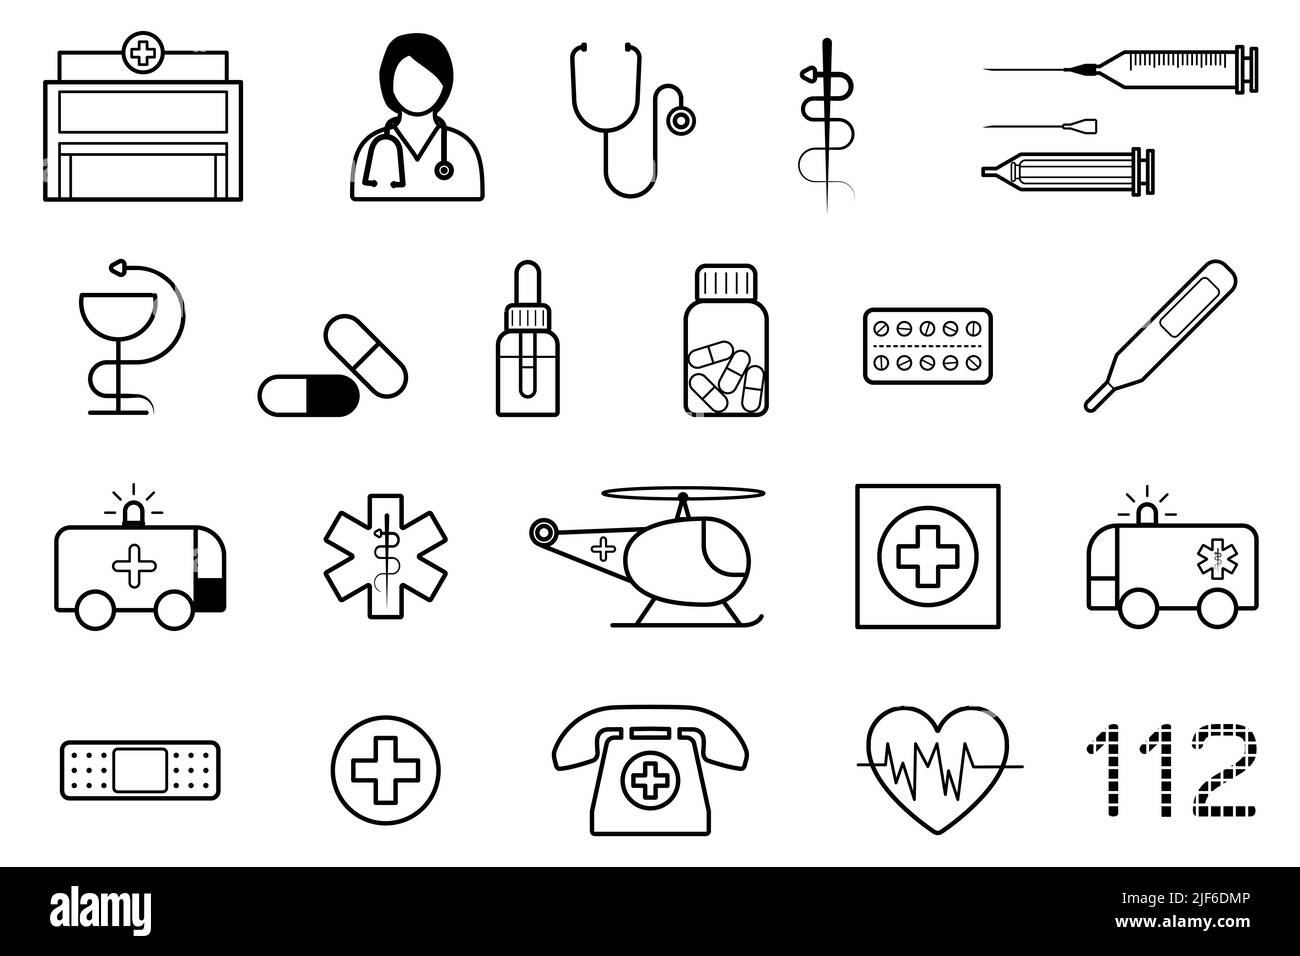 Medizinisches Symbolset. Sammlung von Medizin und Gesundheitssymbolen. Vektordarstellung im Linienstil Stock Vektor